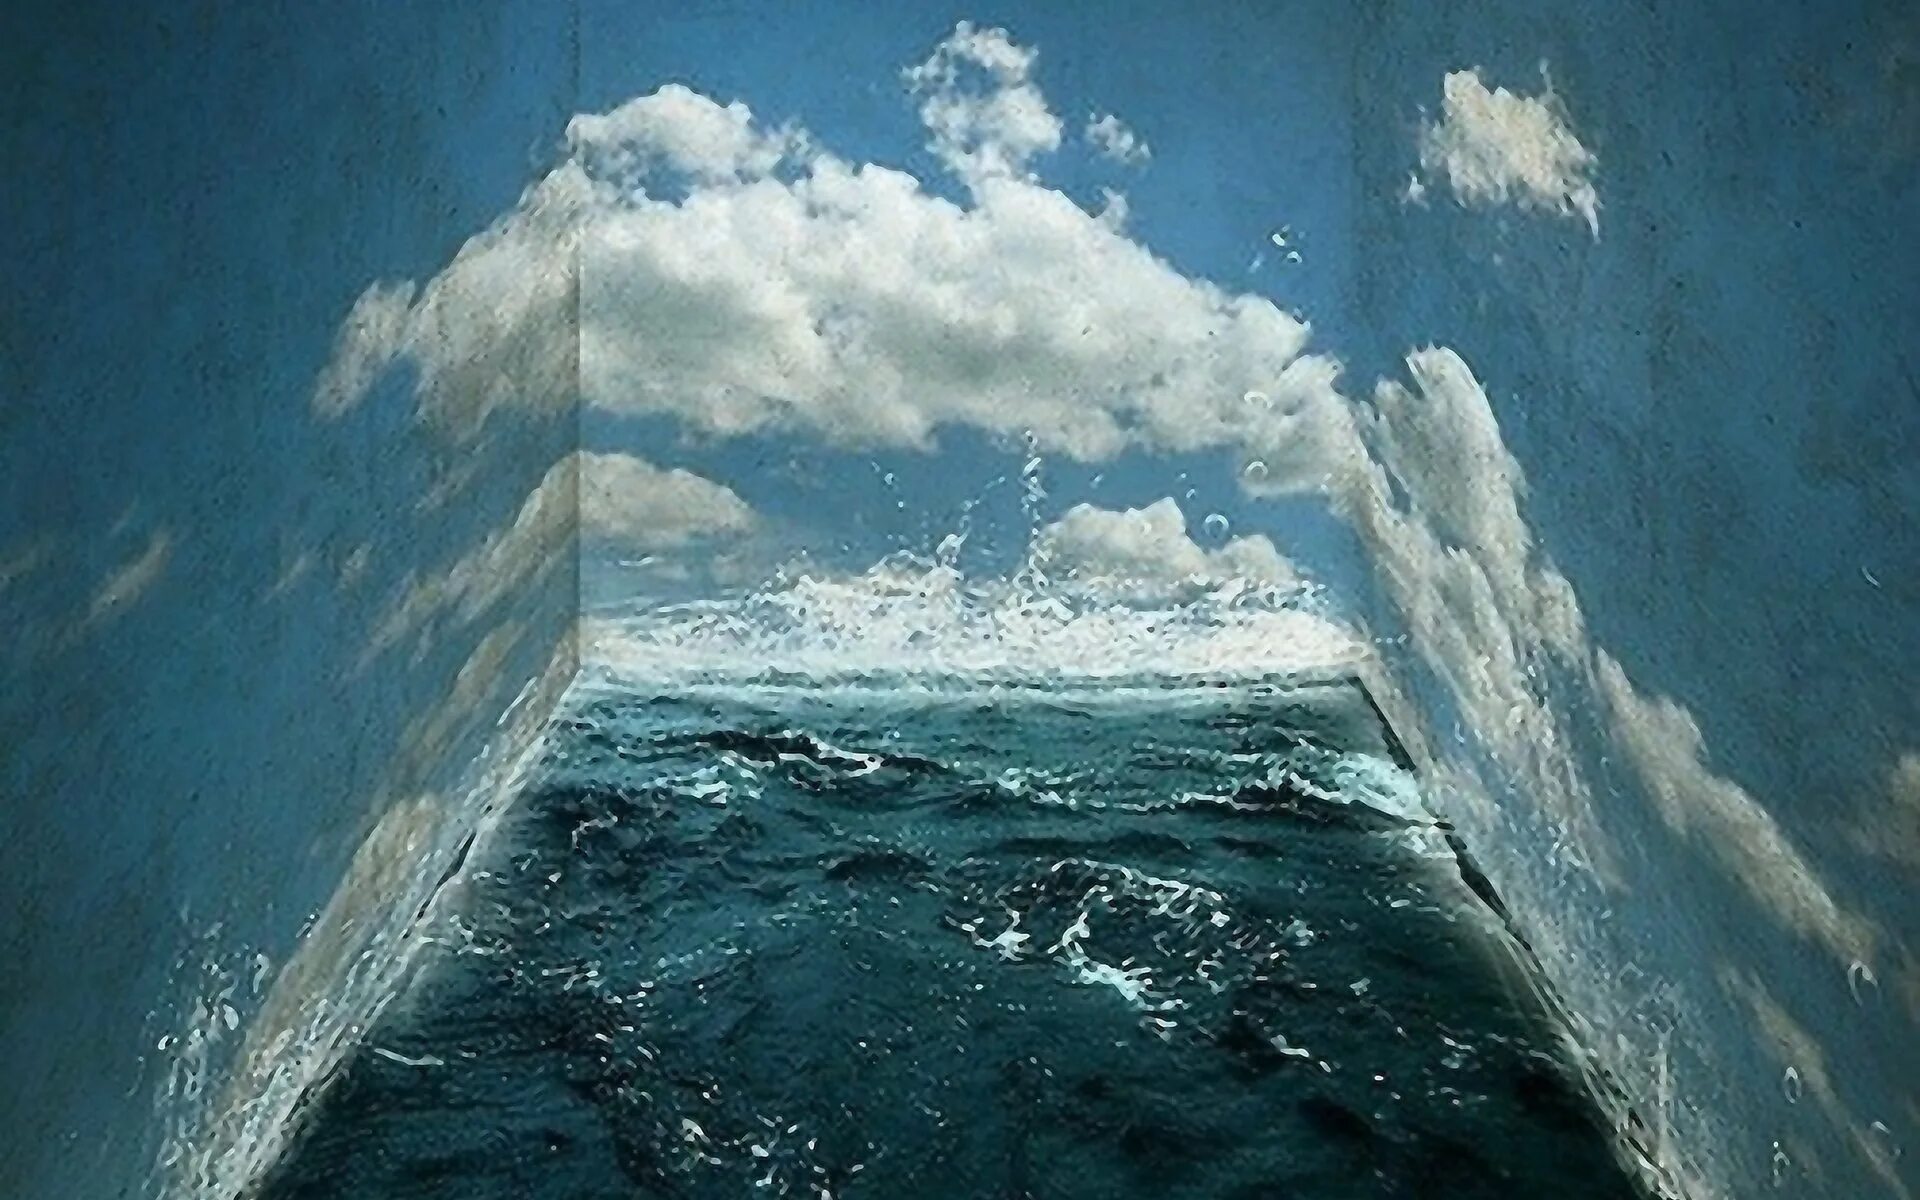 Стена на дне океана. Океан внутри. Море внутри. Стена в океане. Море изнутри.